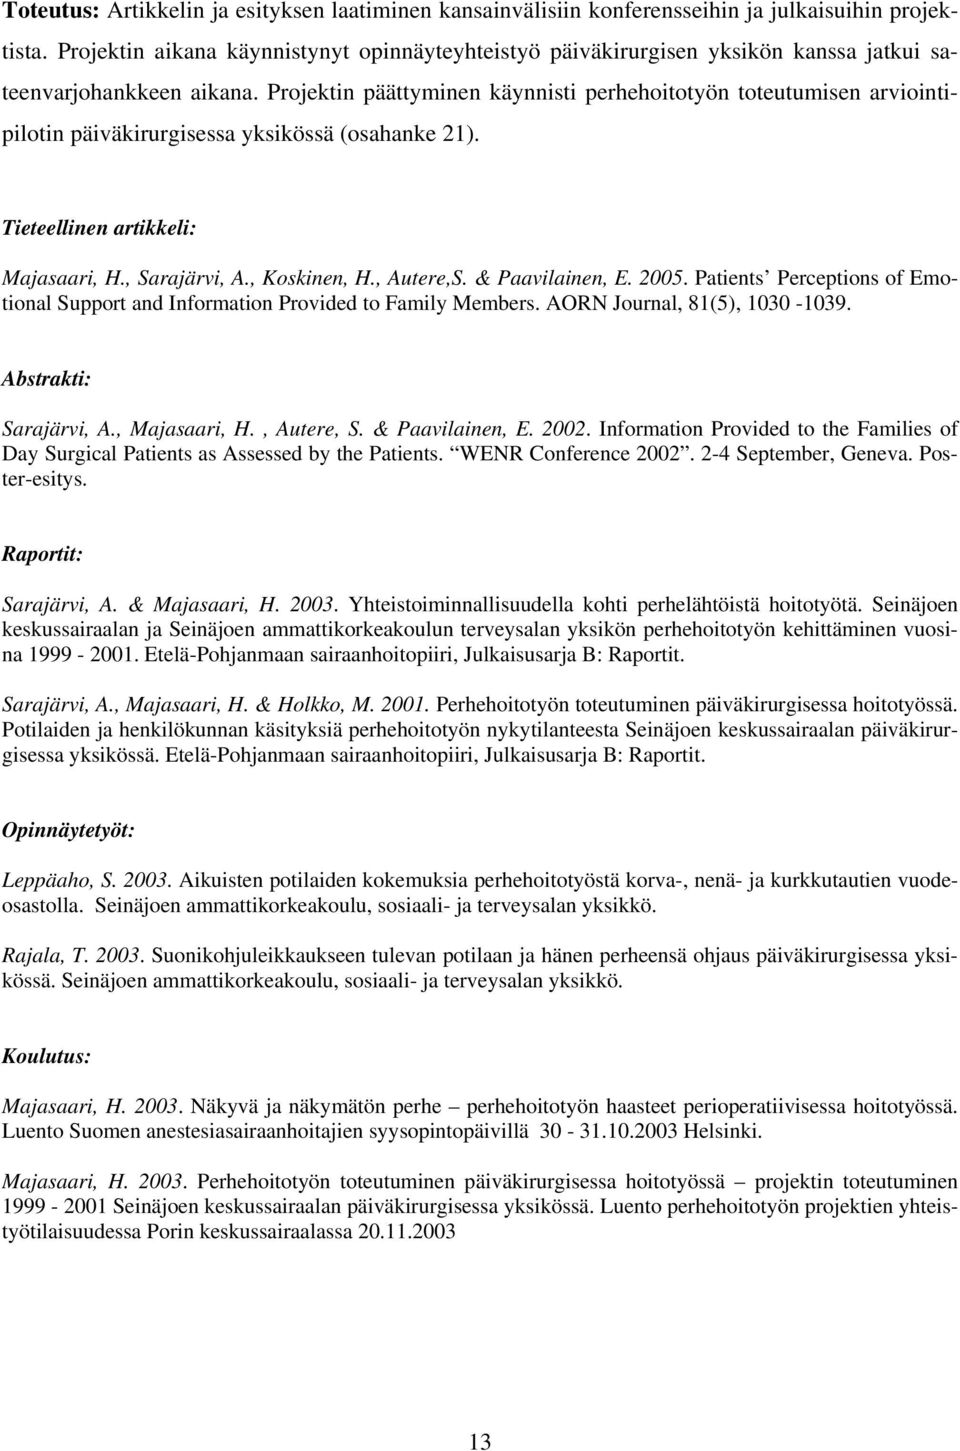 Projektin päättyminen käynnisti perhehoitotyön toteutumisen arviointipilotin päiväkirurgisessa yksikössä (osahanke 21). Tieteellinen artikkeli: Majasaari, H., Sarajärvi, A., Koskinen, H., Autere,S.